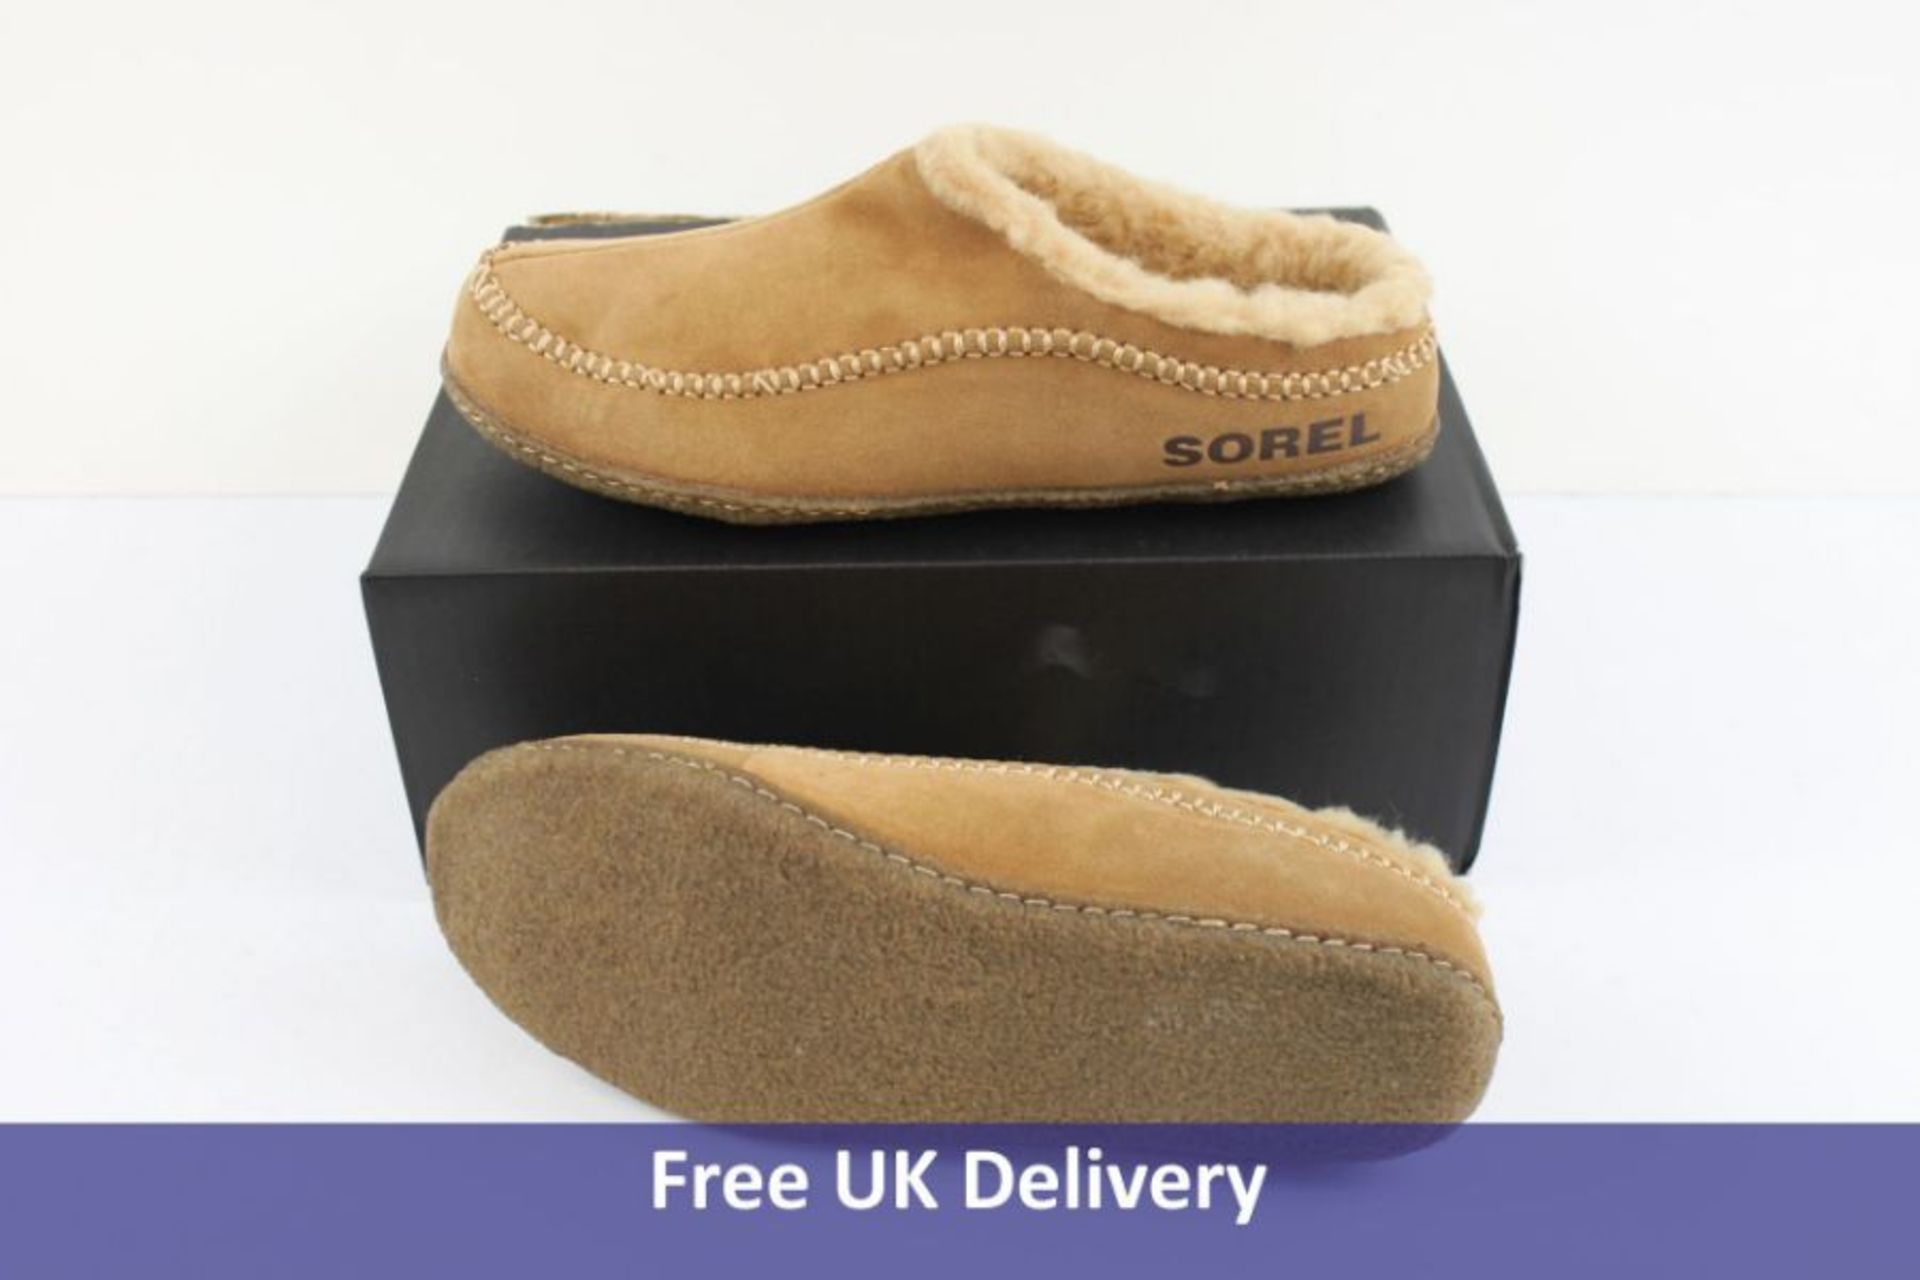 Sorel Men's Lanner Ridge Slippers, Camel Brown, UK 13. Damaged Box